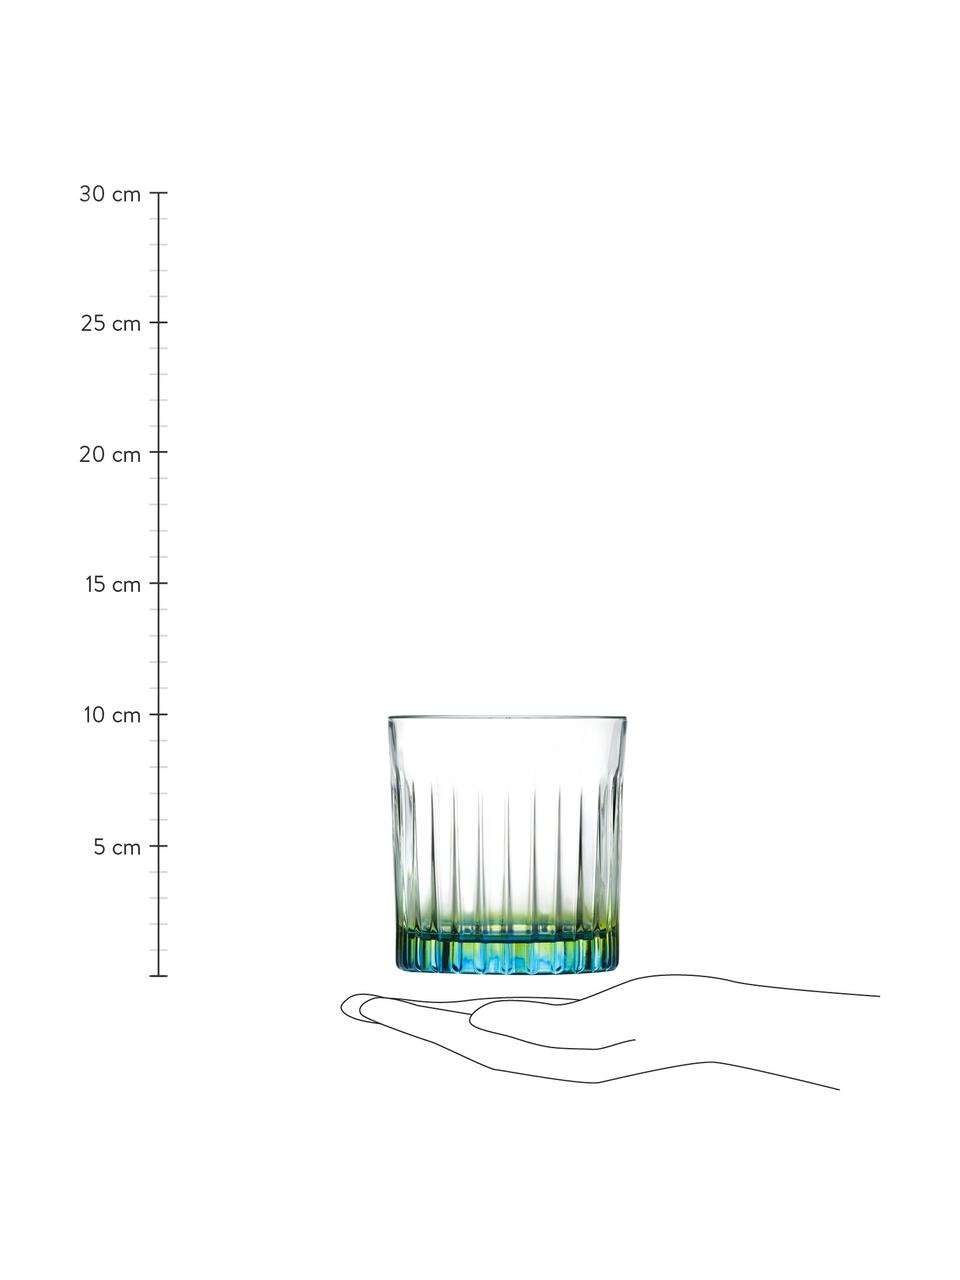 Bicchieri in cristallo Luxion Gipsy 6 pz, Cristallo Luxion, Trasparente, verde giallo, turchese, Ø 8 x Alt. 9 cm